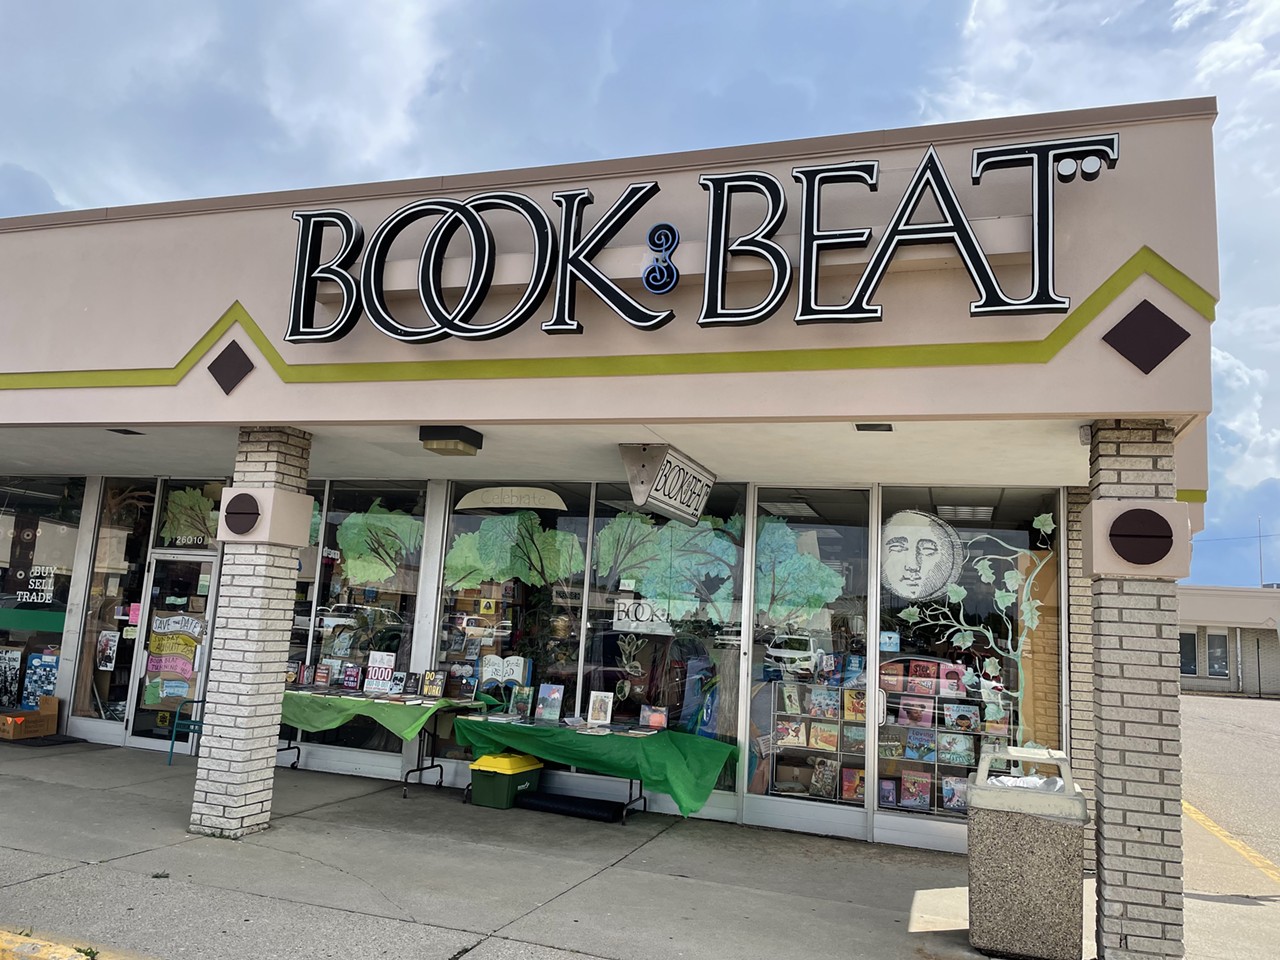 Best Bookstore (Suburbs): The Book Beat
26010 Greenfield Rd., Oak Park; 248-968-1190; thebookbeat.com